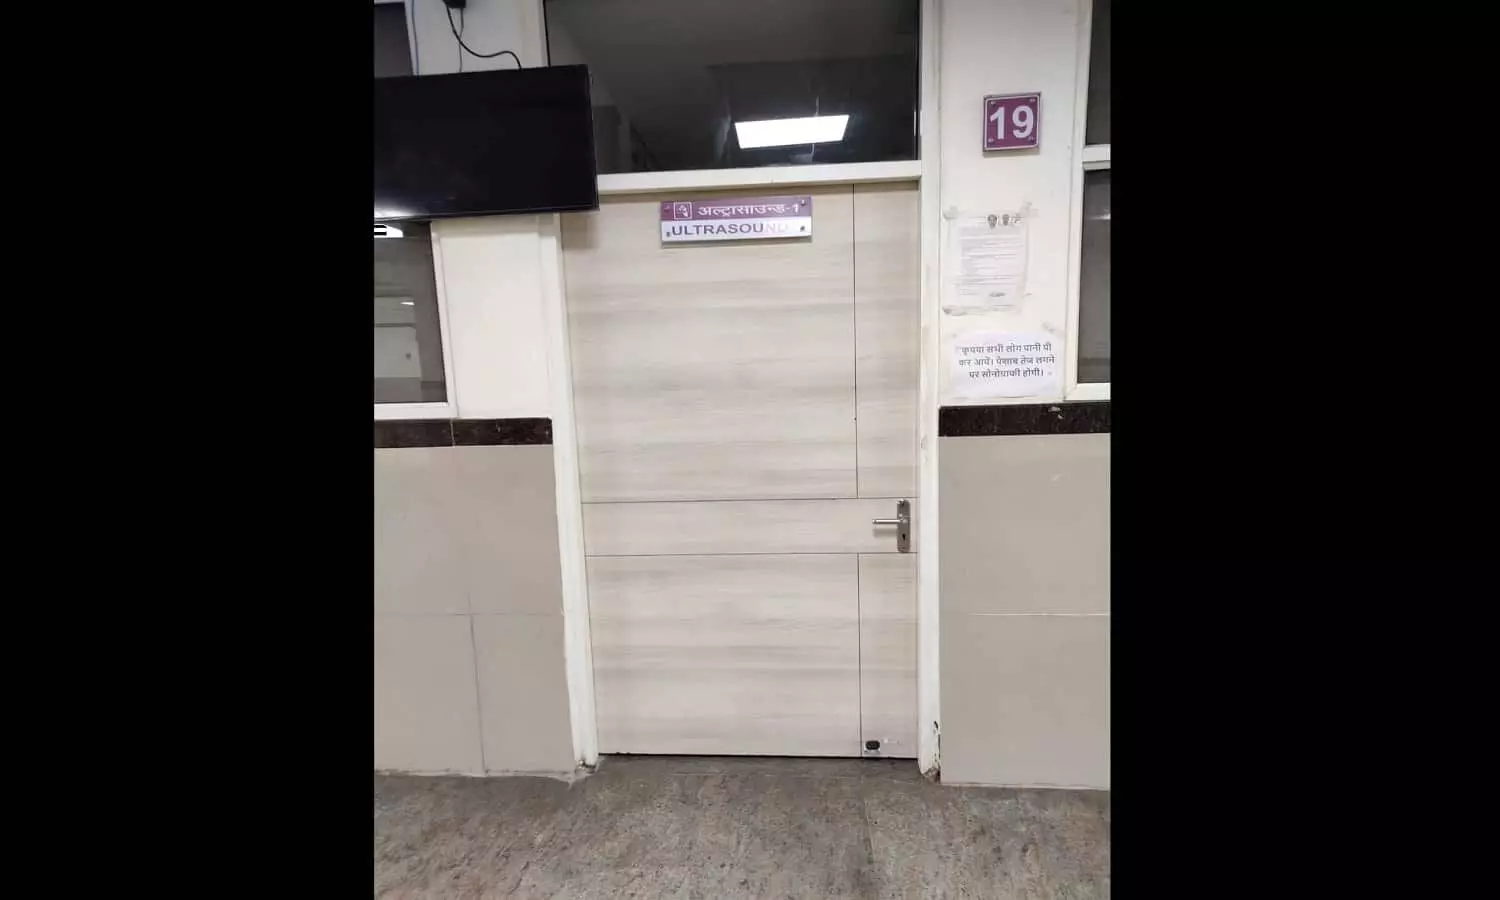 रीवा में सुपर स्पेशलिटी अस्पताल में बंद है अल्ट्रासाउंड मशीन, एसजीएमएच में दो माह की वेटिंग